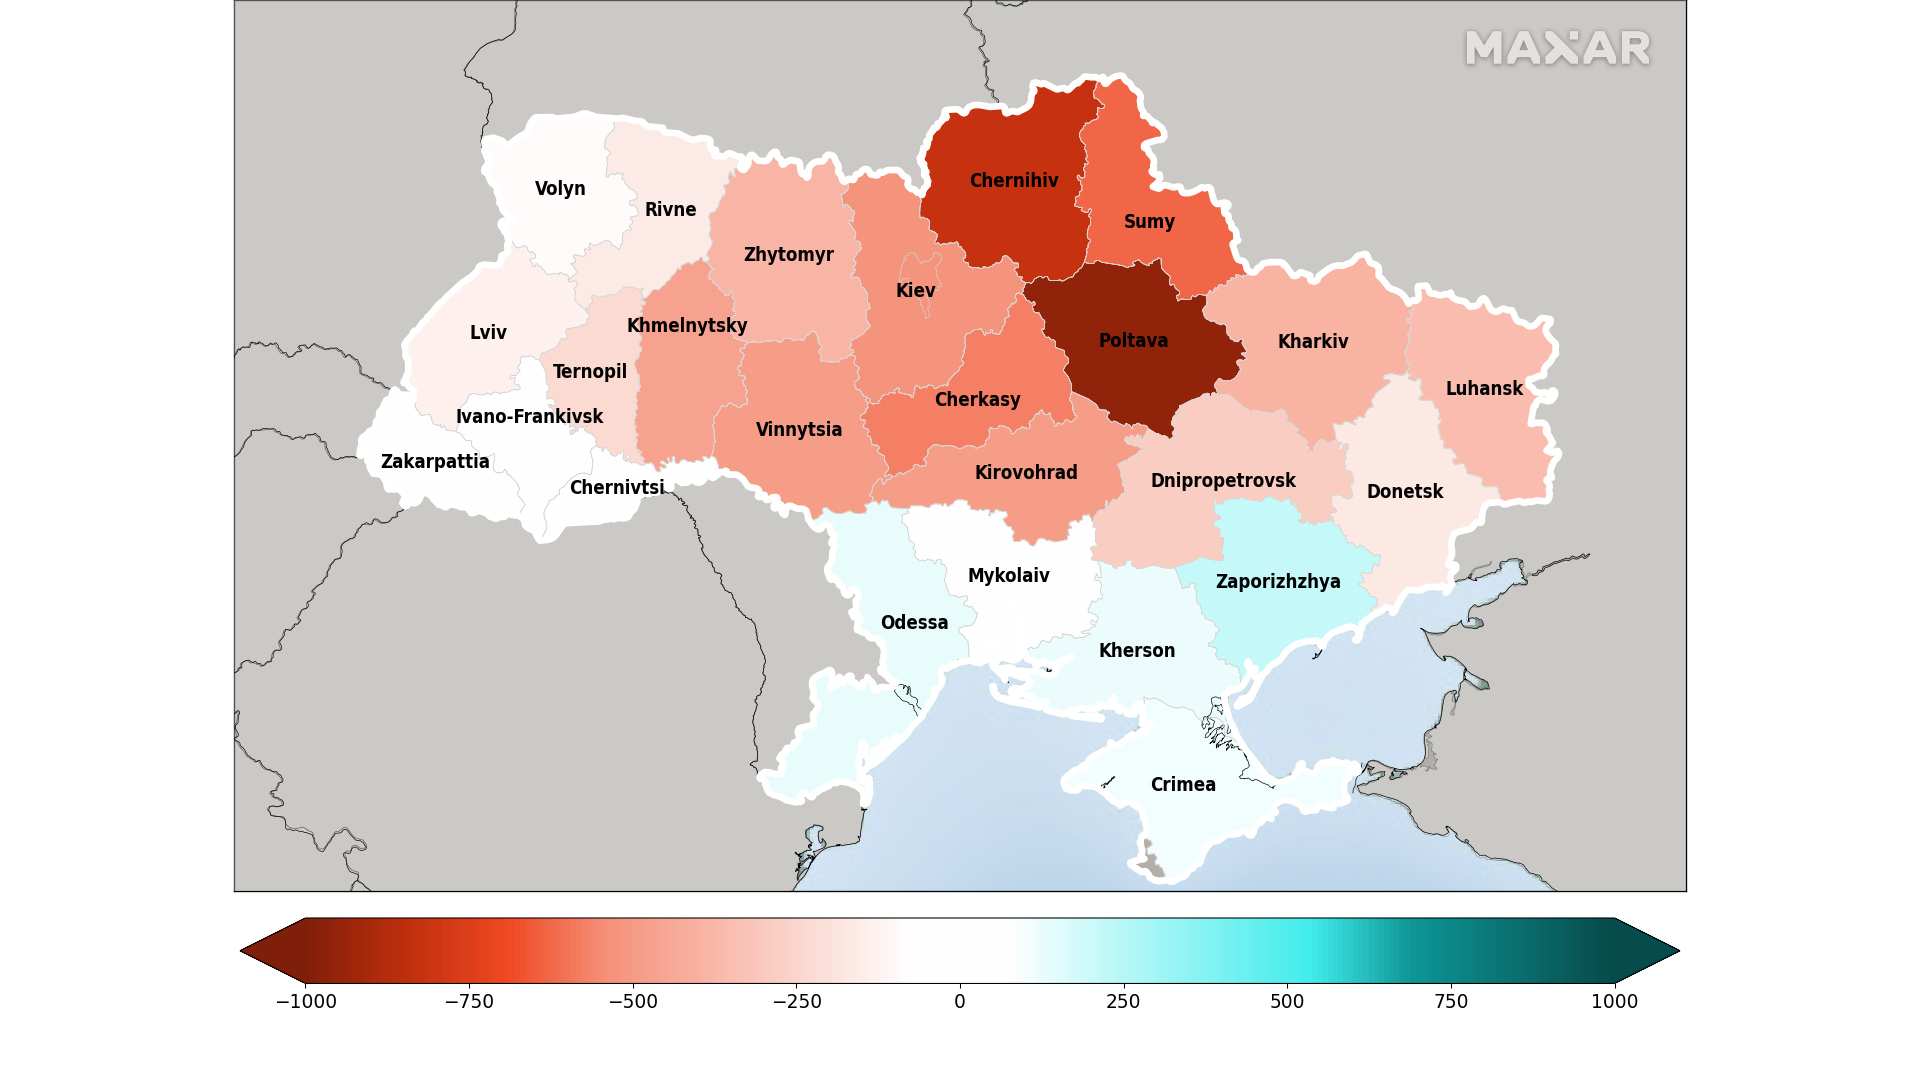 Украина из-за войны может недосчитаться половины обычного урожая зерновых — Maxar - 1 - изображение